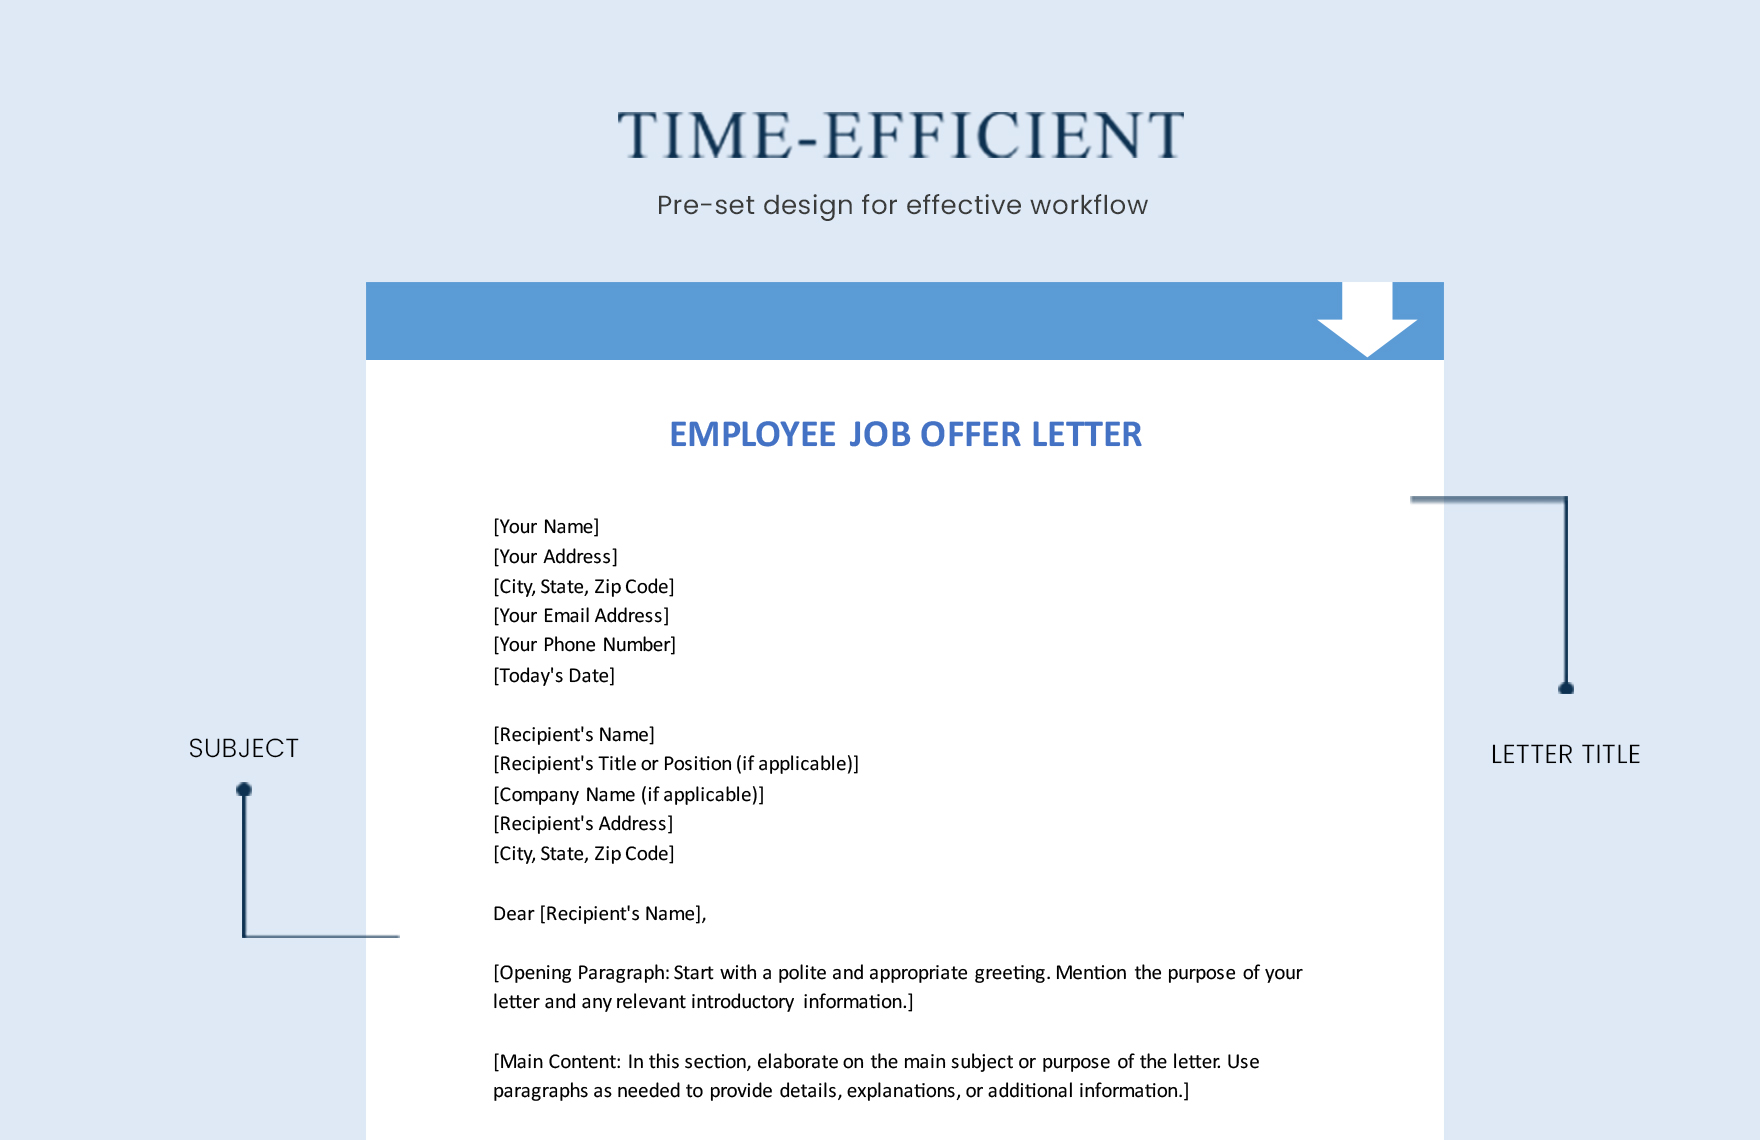 Employee Job Offer Letter